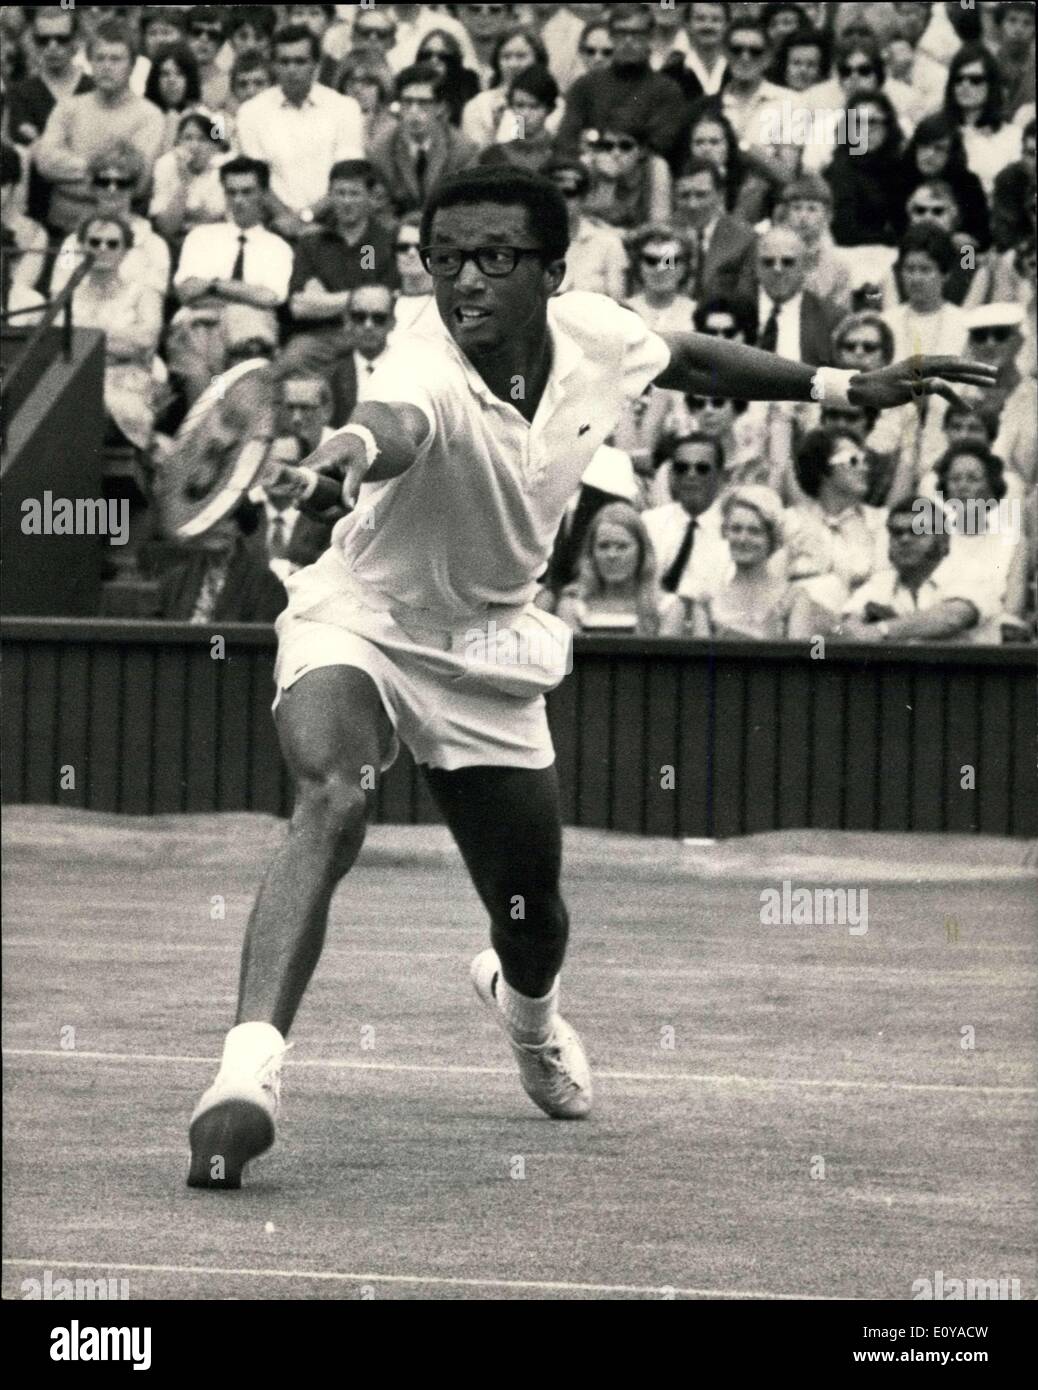 Juin 28, 1969 - Championnats de tennis de Wimbledon ASHE USA CONTRE GONZALES USA : Gonzales a été éliminé de la Wimbledon tourn Banque D'Images